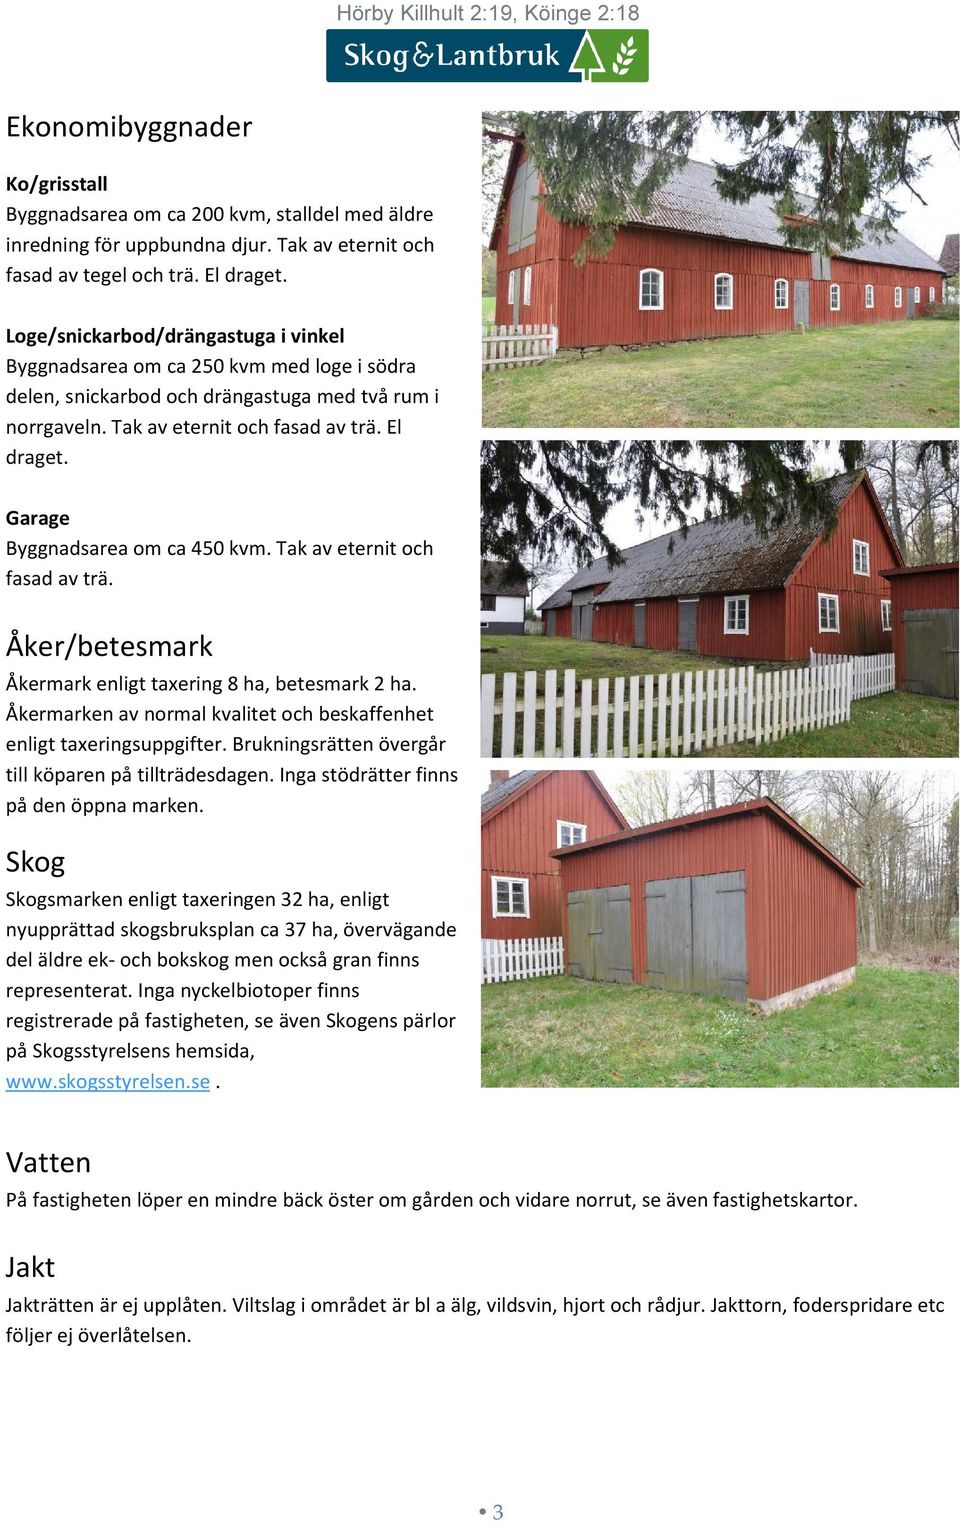 Garage Byggnadsarea om ca 450 kvm. Tak av eternit och fasad av trä. Åker/betesmark Åkermark enligt taxering 8 ha, betesmark 2 ha.